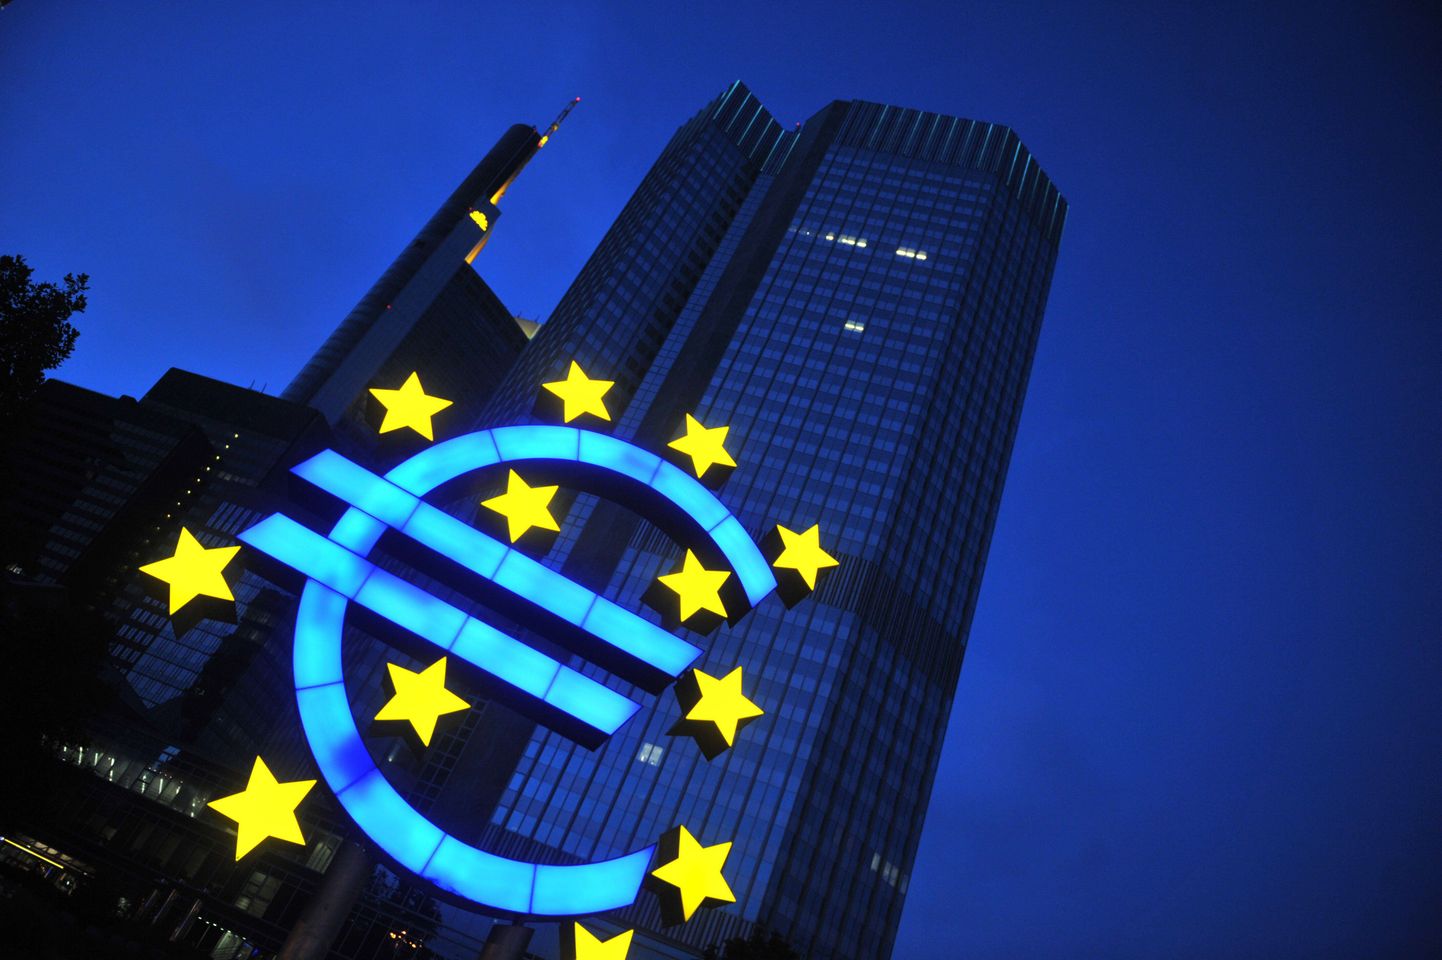 Символ евро перед зданием Европейского центрального банка во Франкфурте.